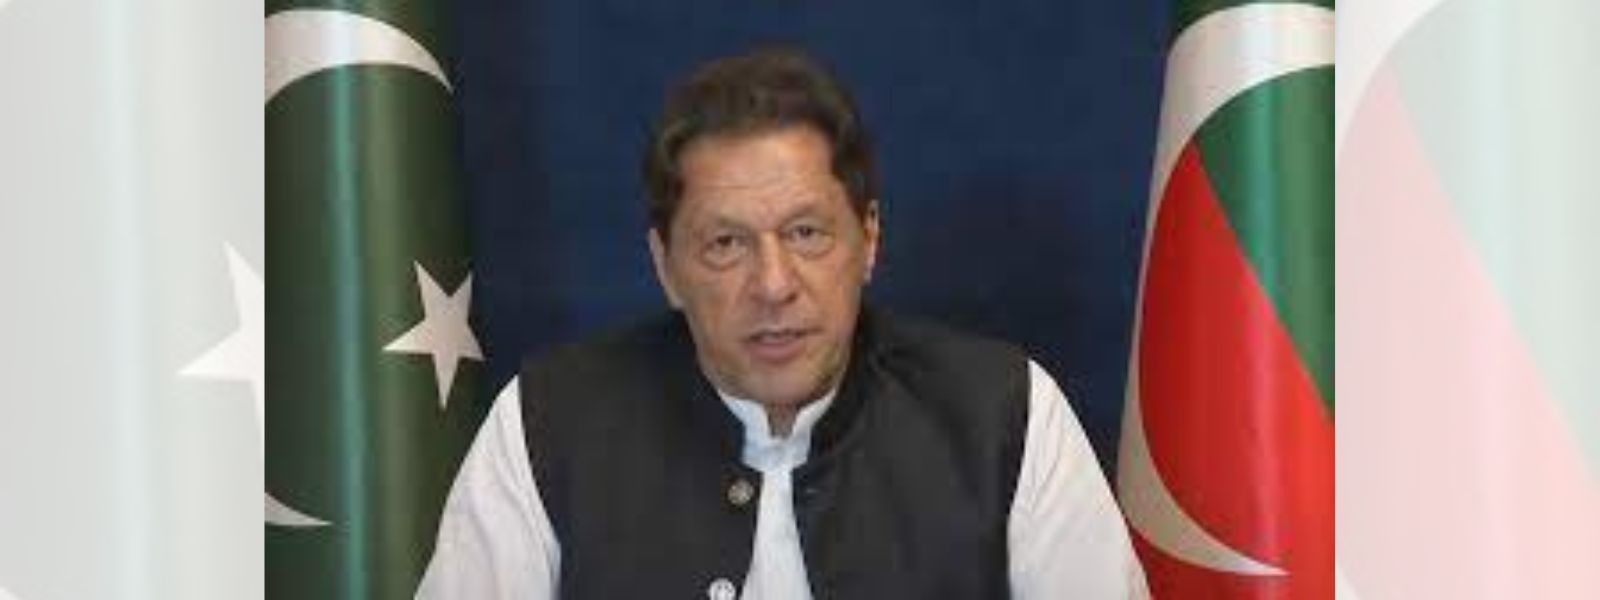 BREAKING: Imran Khan sentenced to three years jail